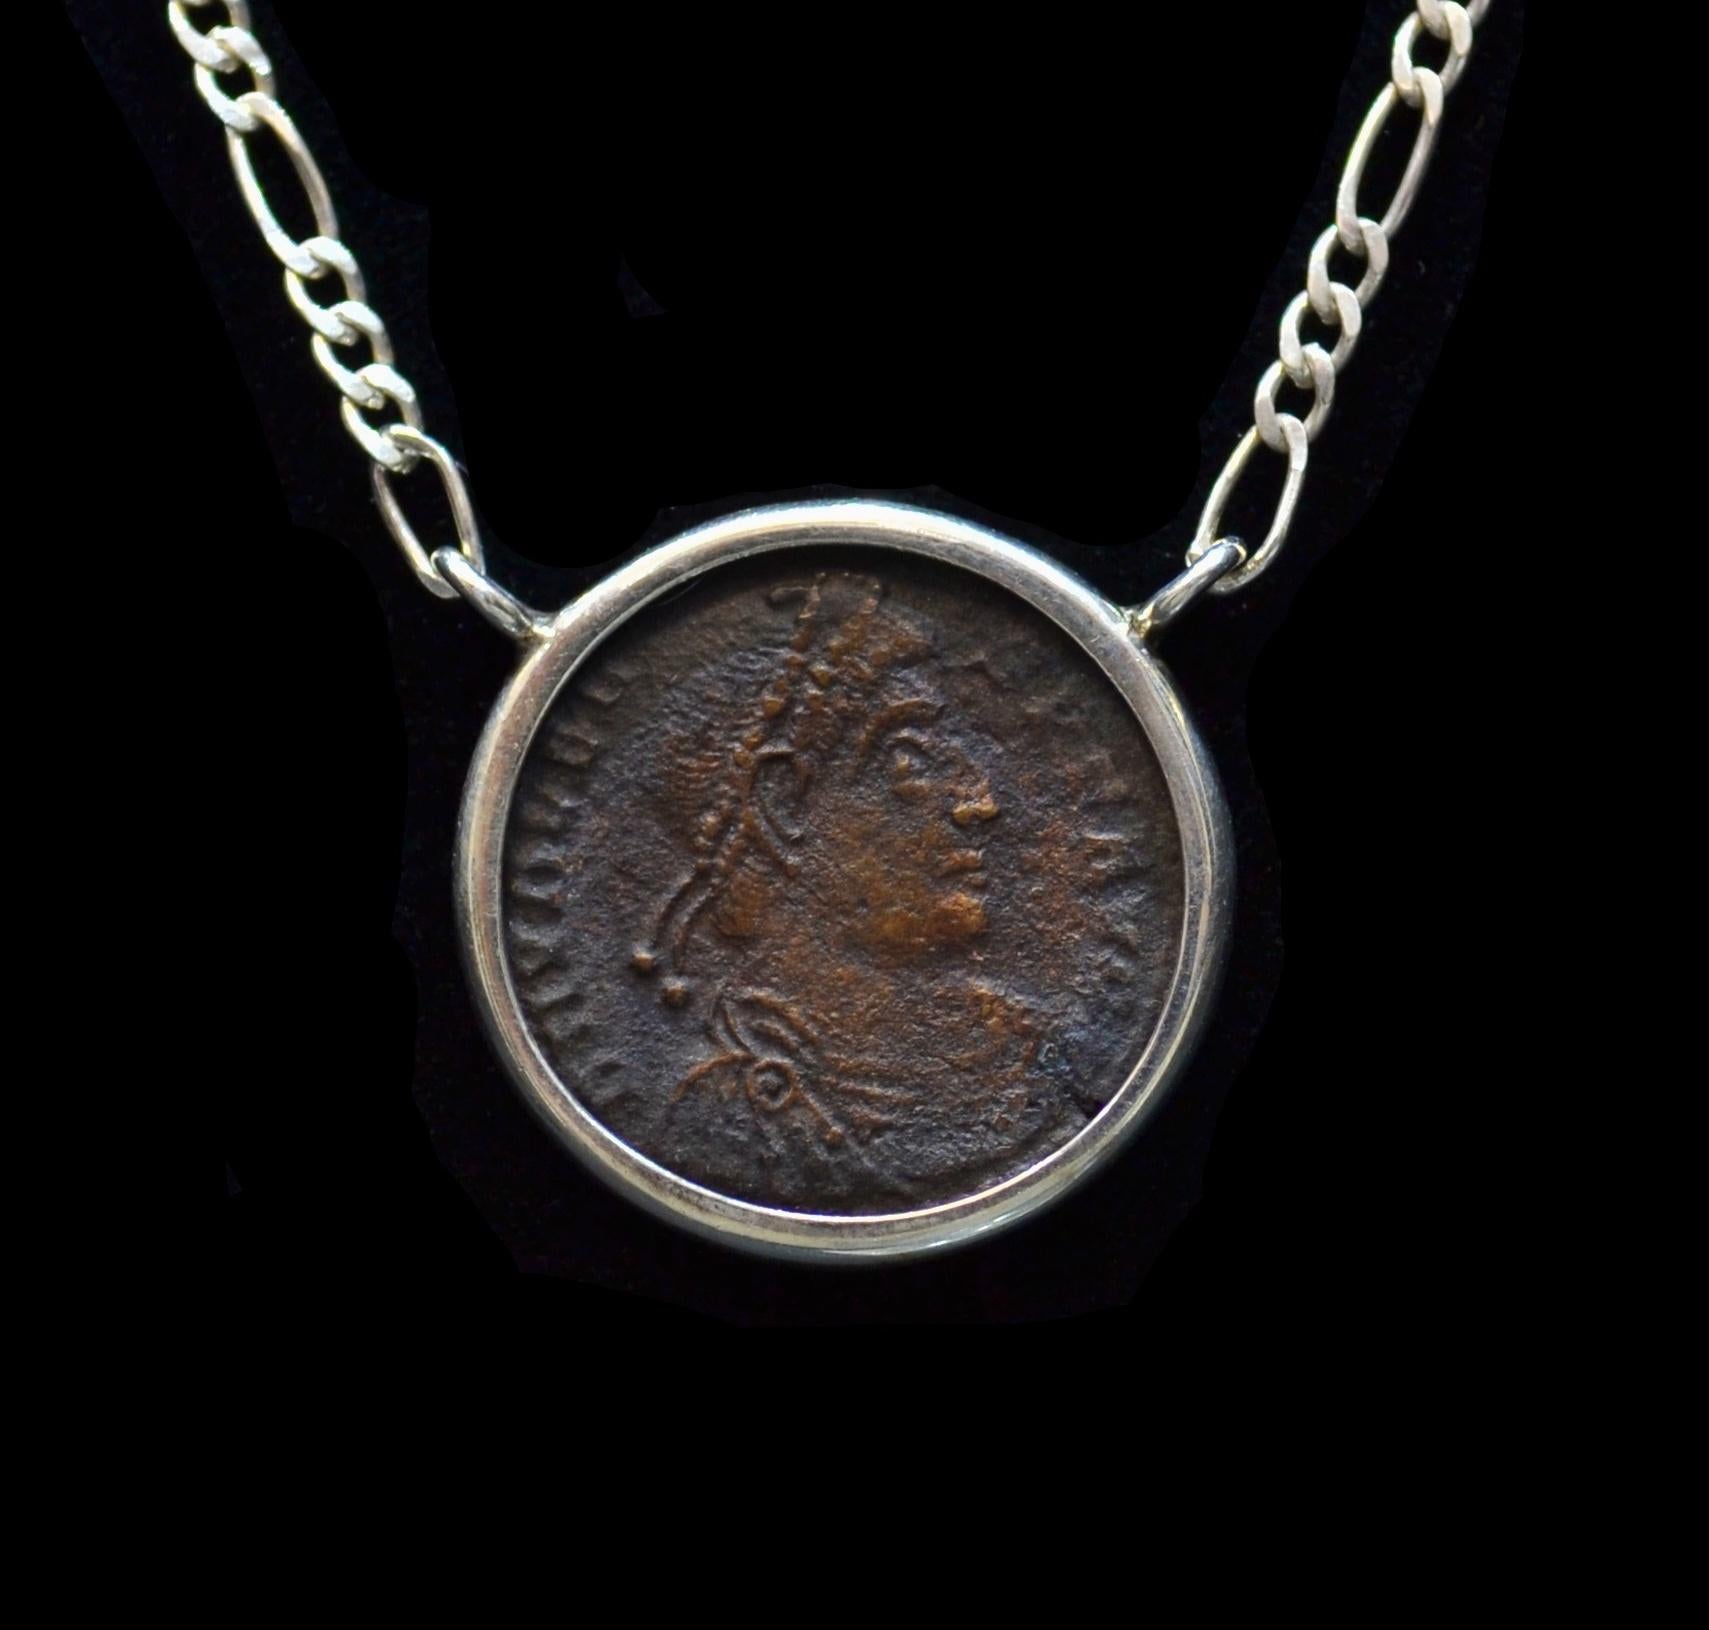 Authentische römische Bronzemünze ca. 364-375 CE  montiert an einer modernen Silberkette. Bereit, getragen zu werden!

Der auch als Valentinian der Große bekannte Kaiser machte seinen Bruder Valens zu seinem Mitkaiser und übertrug ihm die Herrschaft